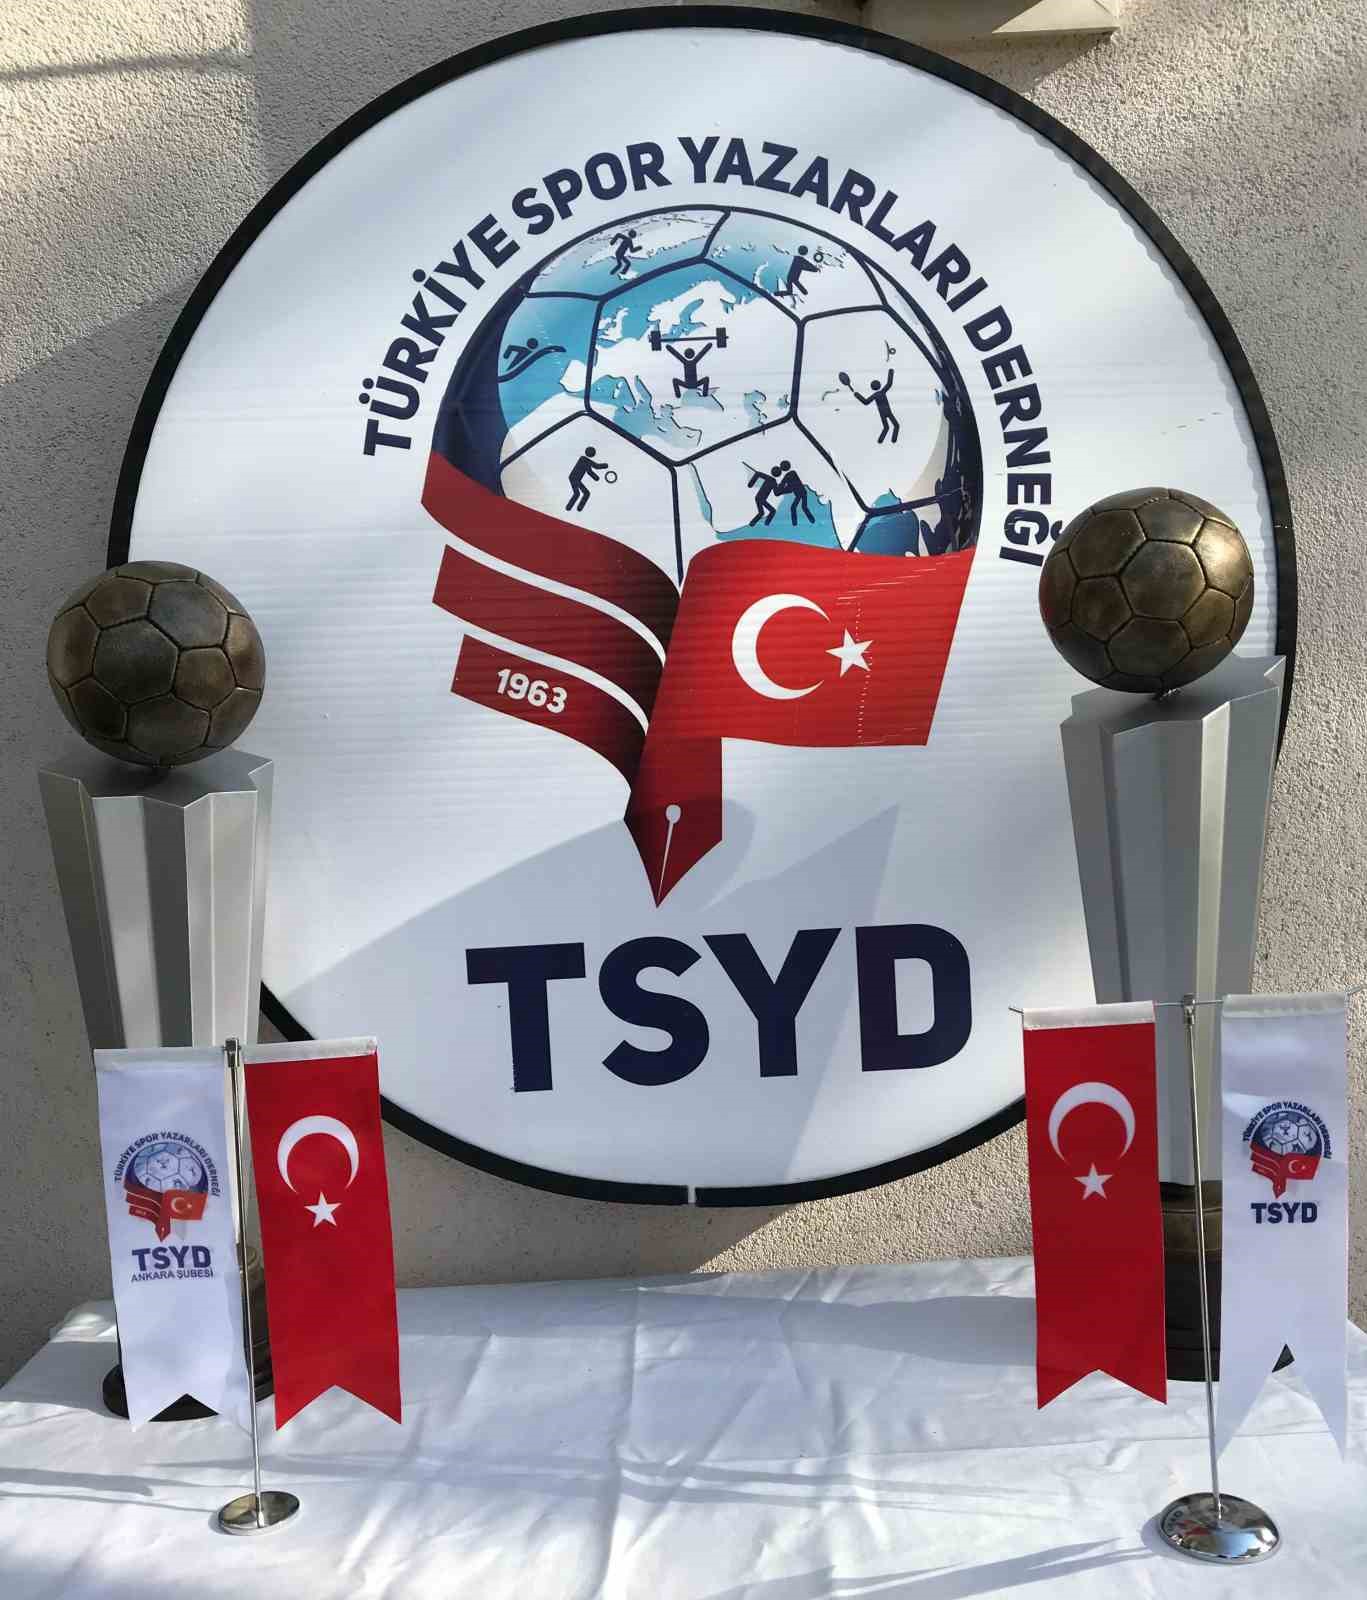 56. TSYD Ankara Şubesi Kupası, 18 Kasım’da oynanacak